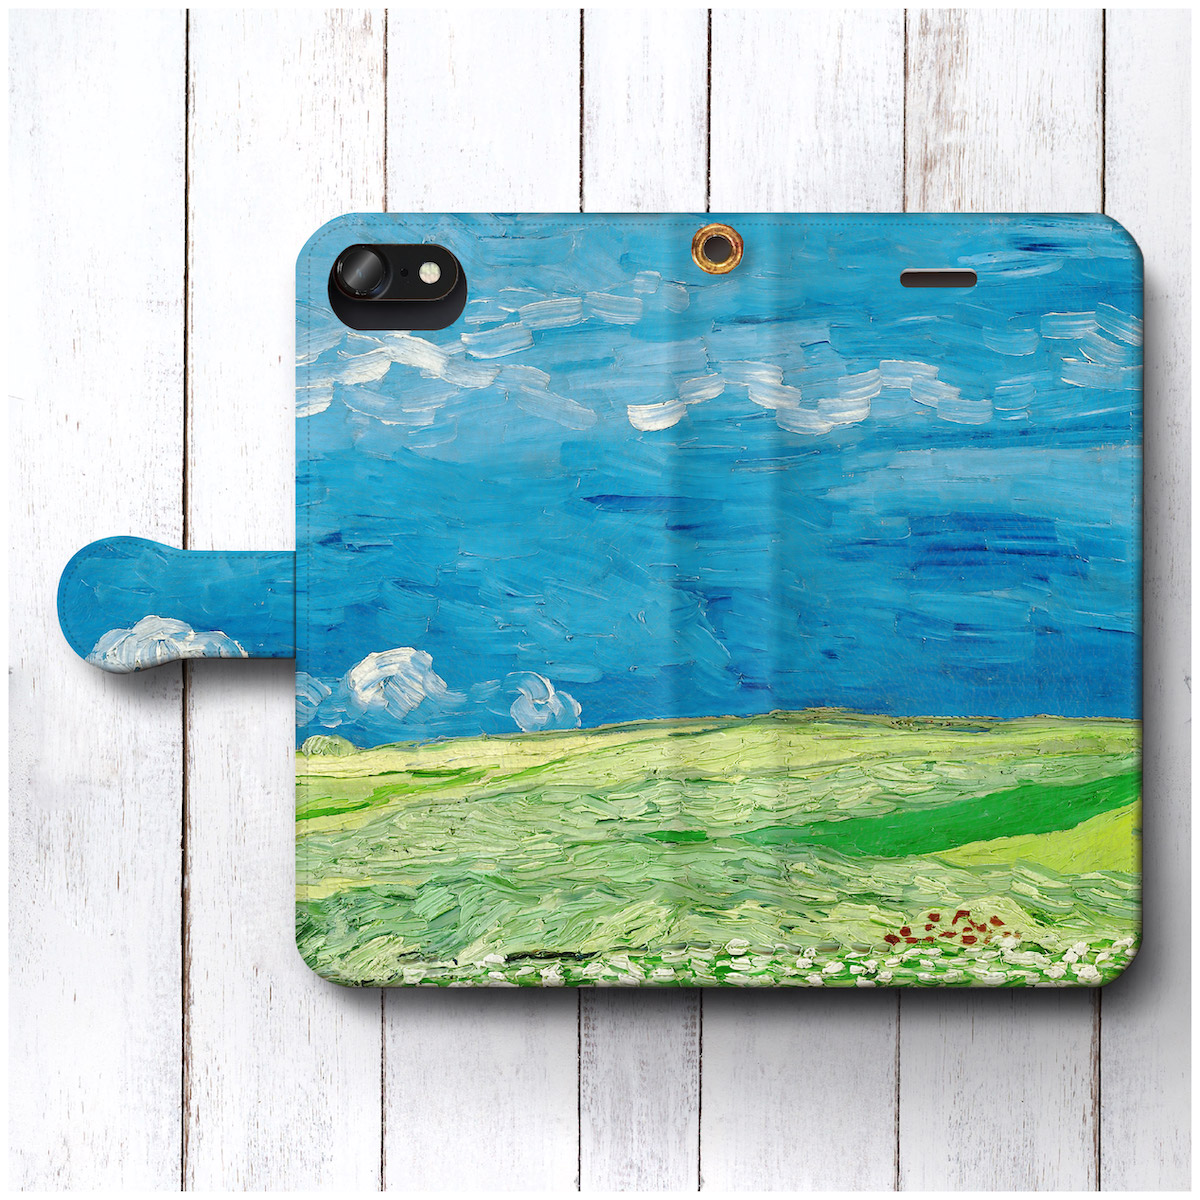 スマホケース 手帳型 ファン ゴッホ 雷雲の下の麦畑 全機種対応 スマホカバー 人気 絵画 レザー 個性的 携帯ケース